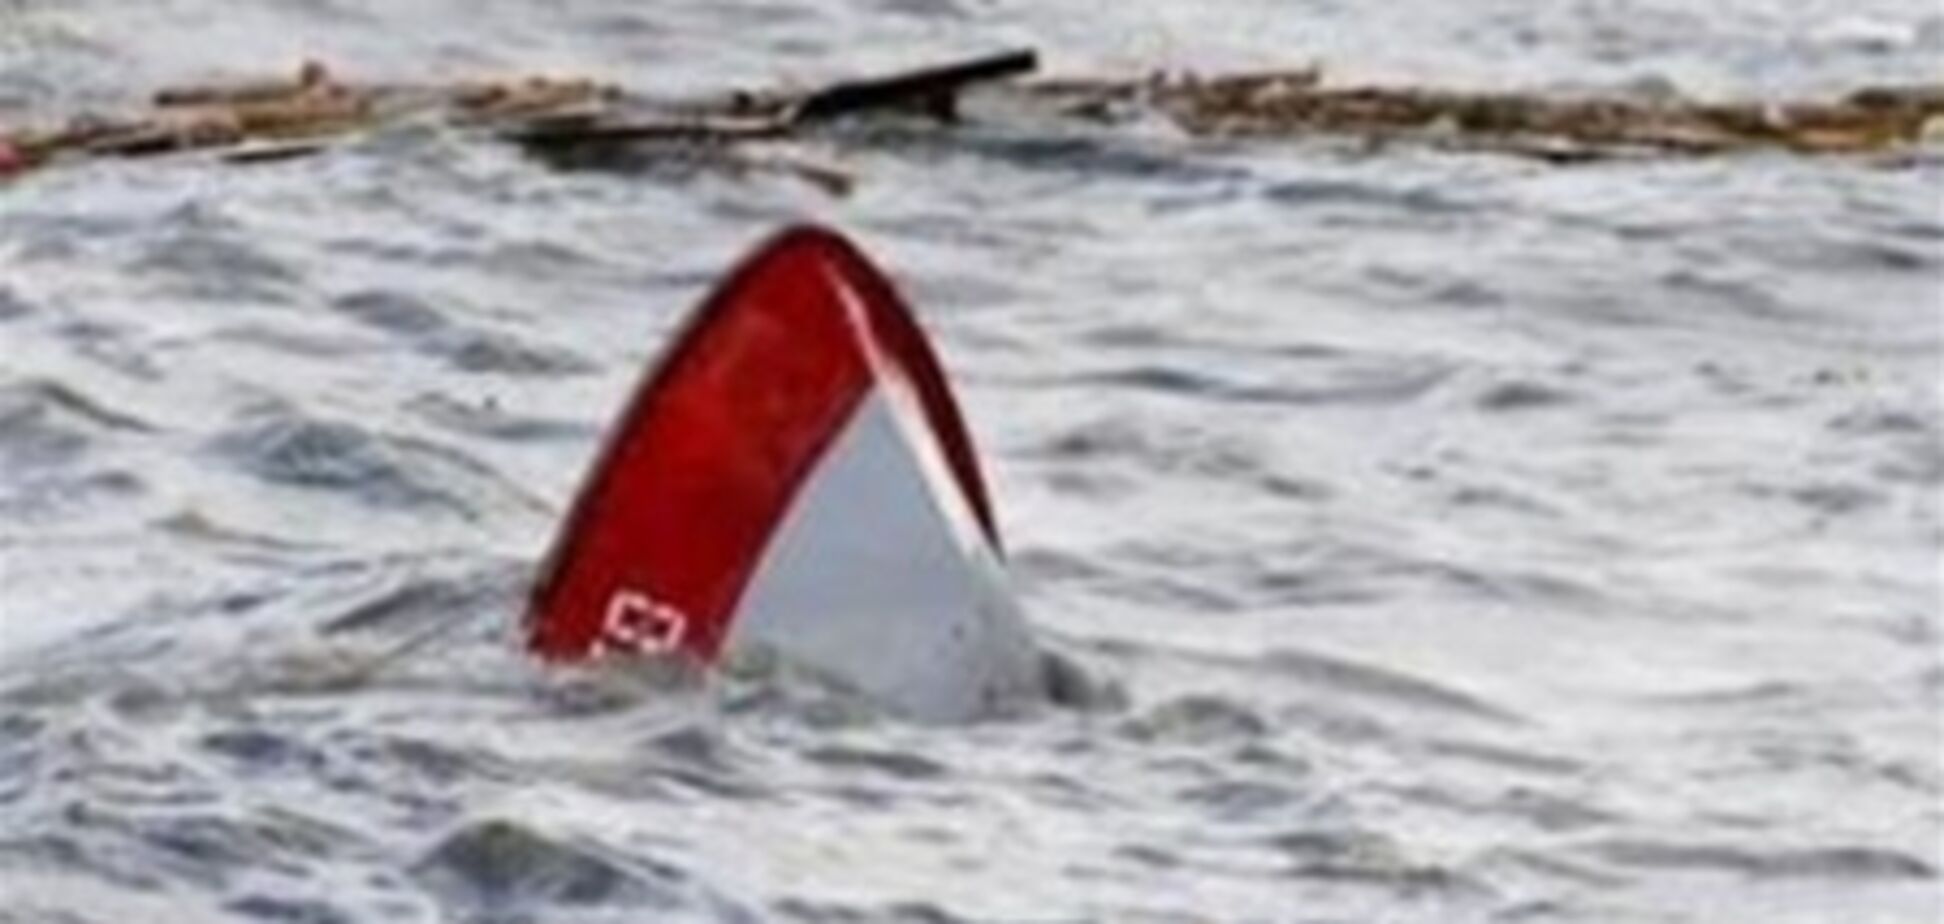 Загиблі на Азові рибалки мали дозвіл на перетин кордону - ЗМІ